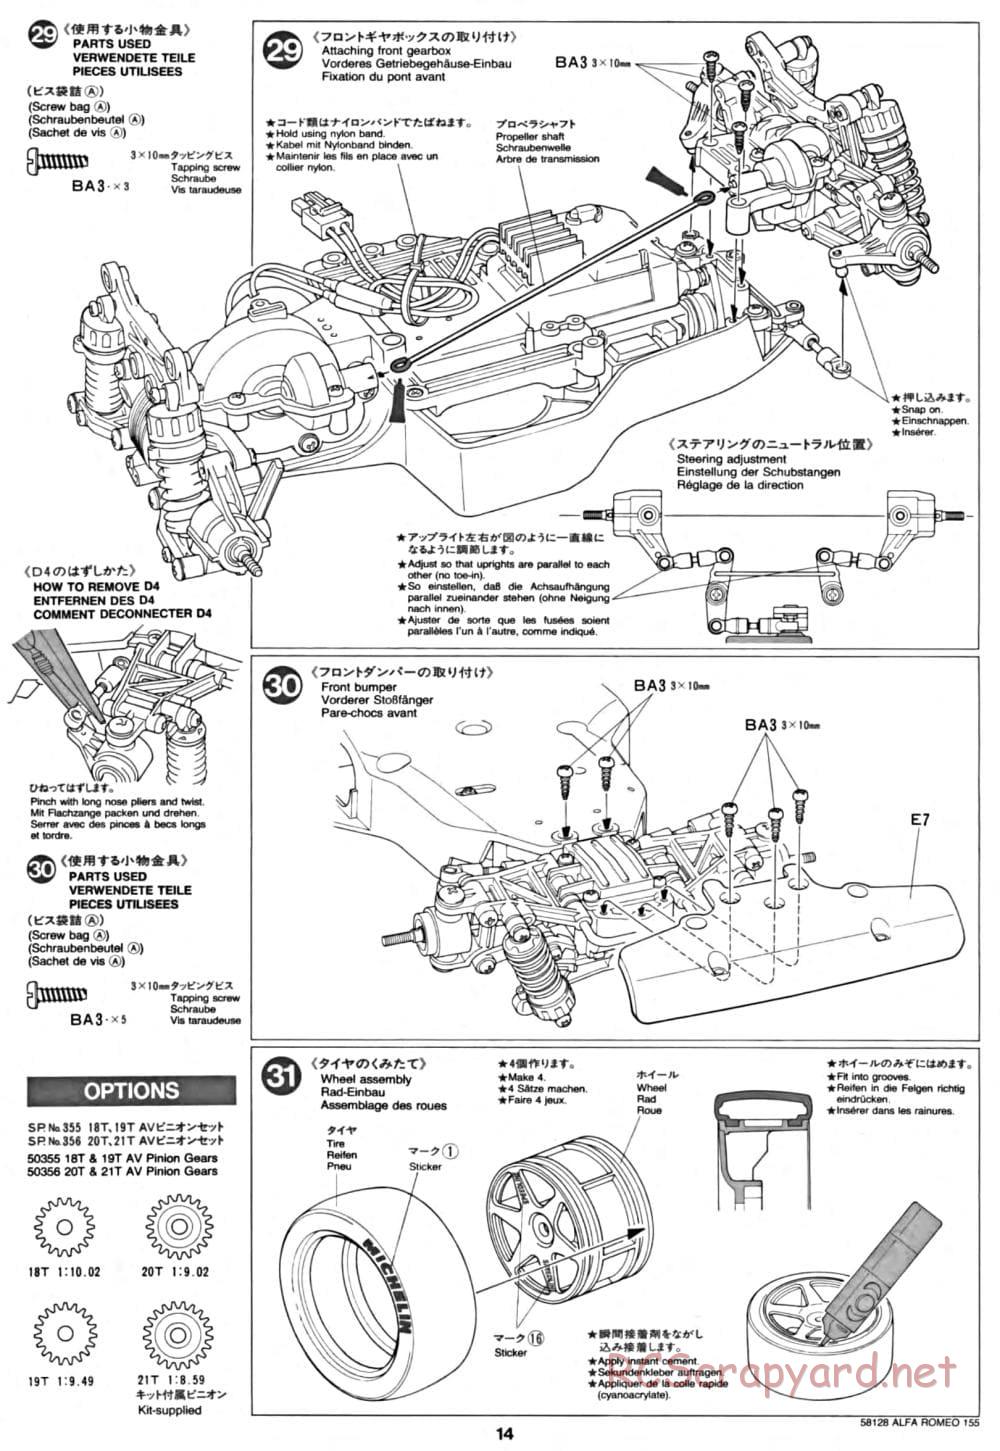 Tamiya - Alfa Romeo 155 V6 TI - TA-02 Chassis - Manual - Page 14